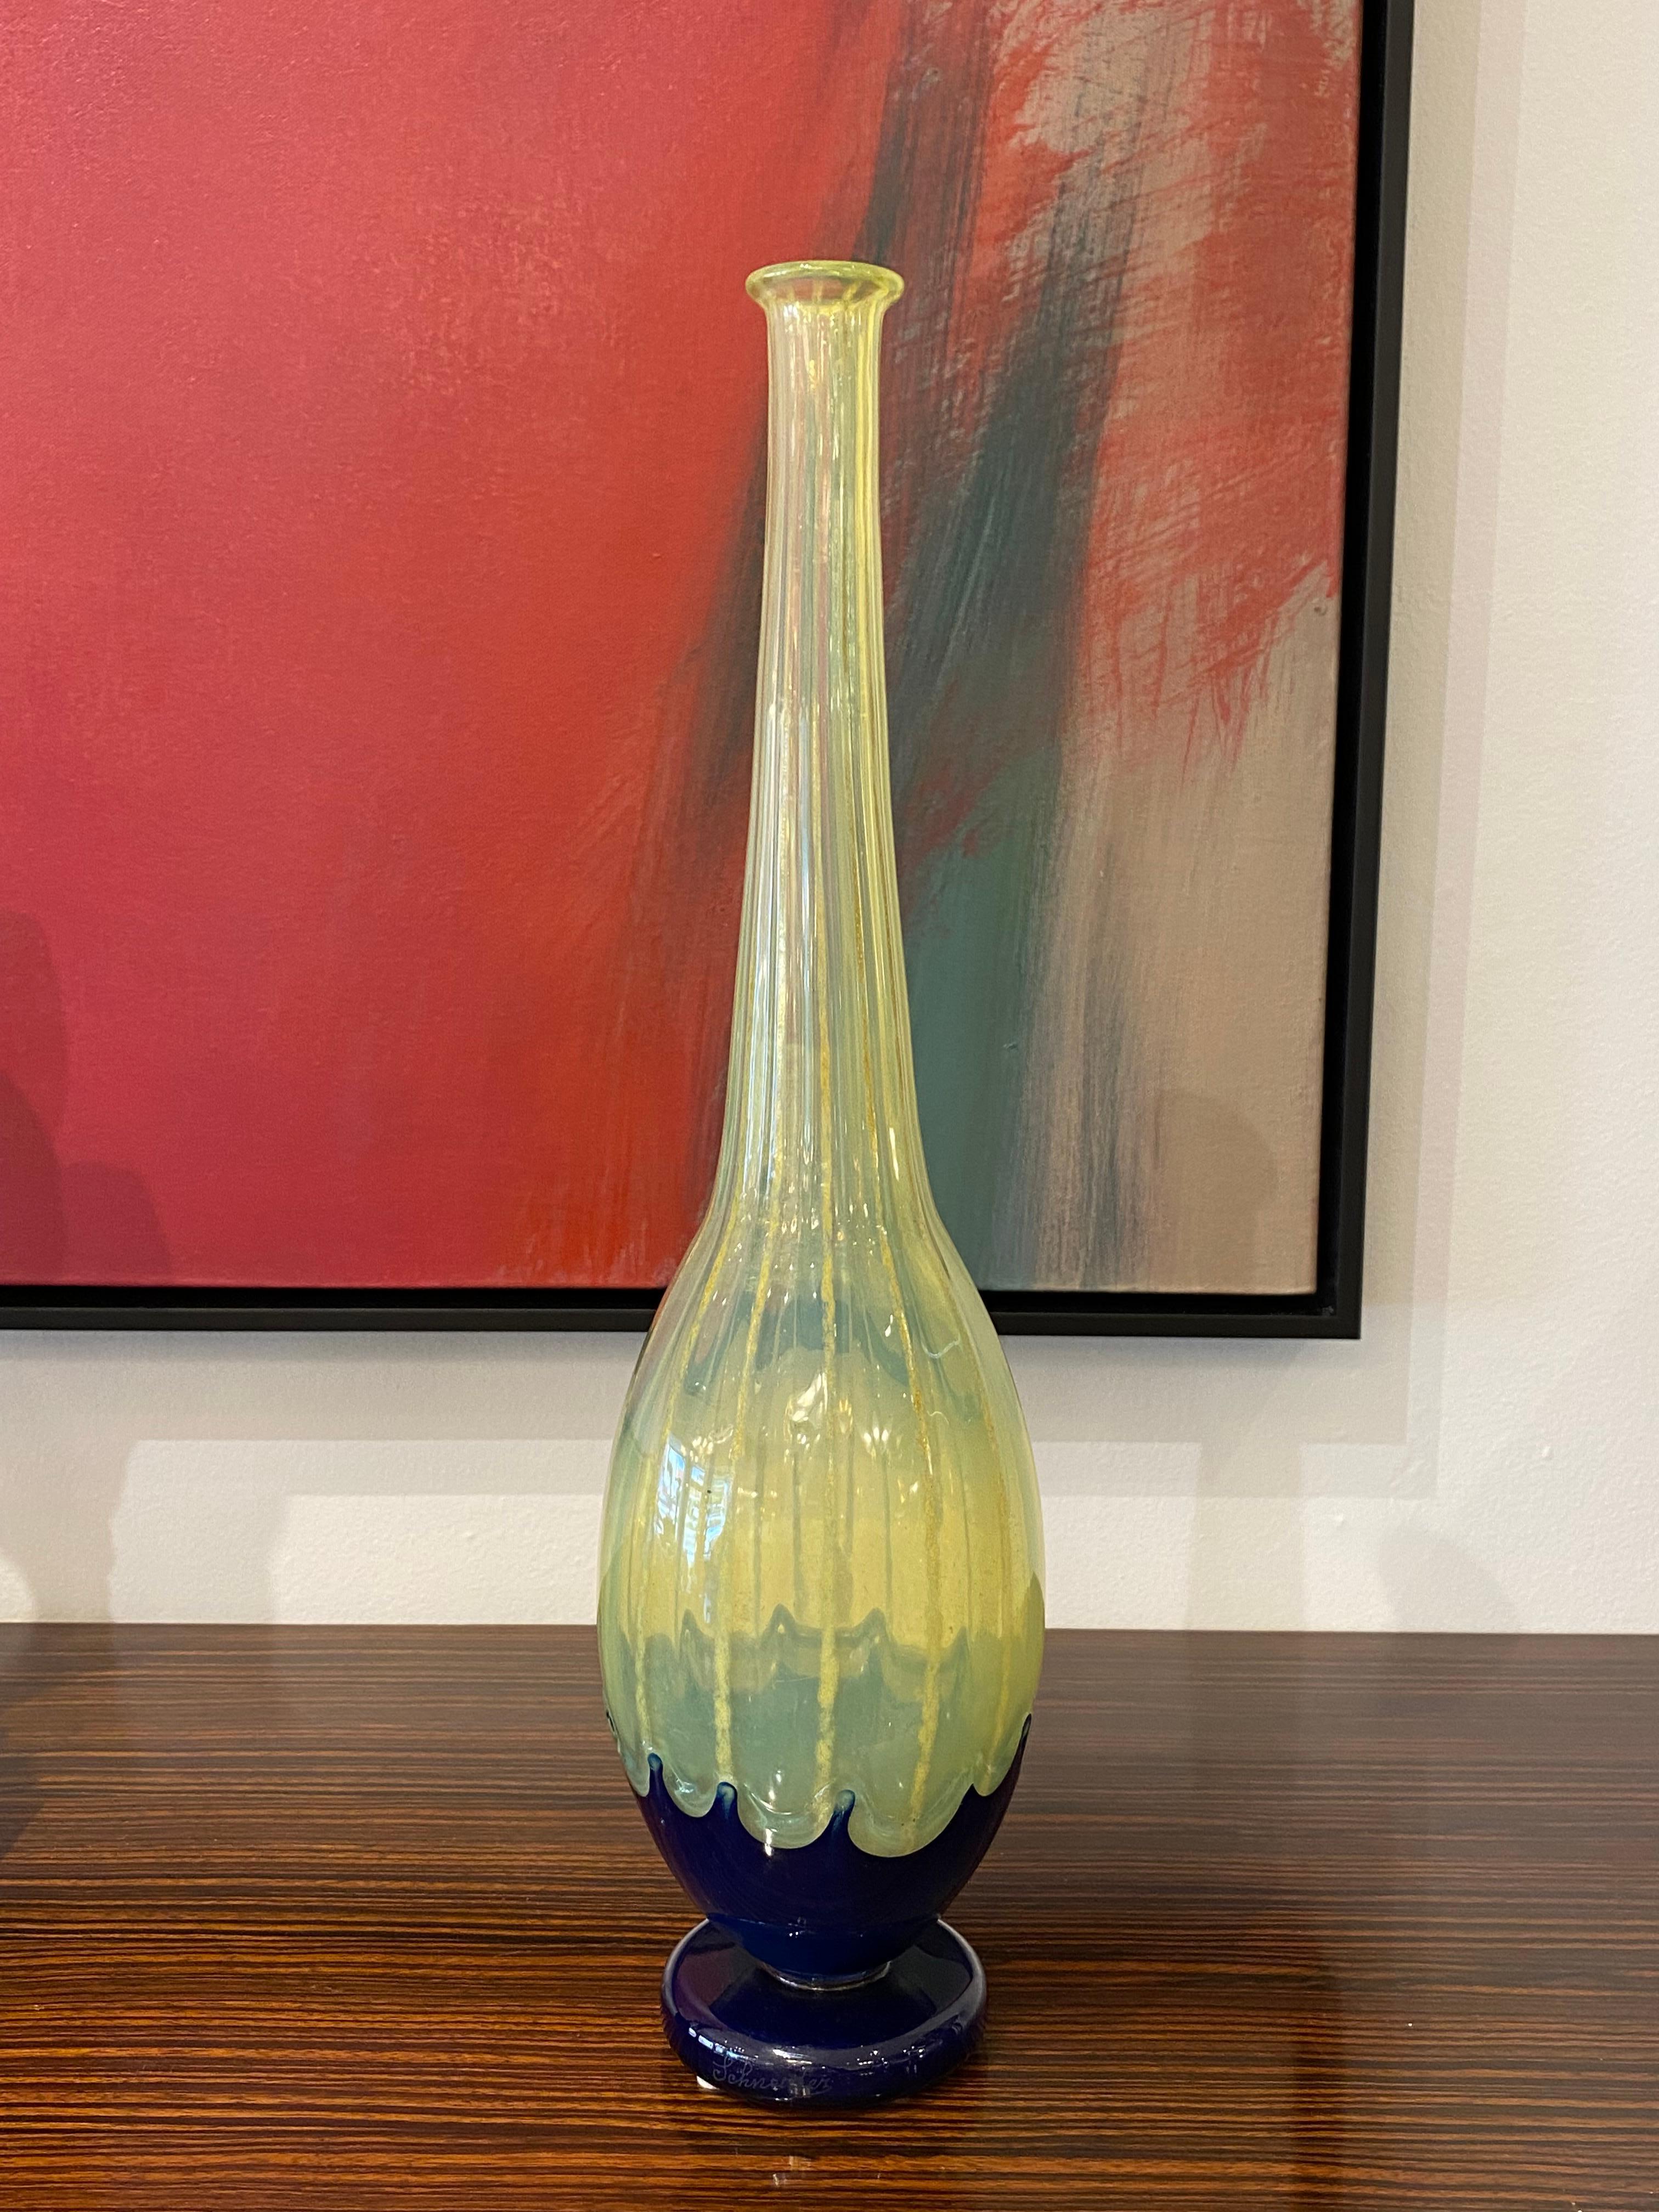 Vase Art déco en verre de Charles Schneider dans la technique des filets en couleur jaune néon et application de verre bleu cobalt.
Charles Schneider était un verrier renommé pendant la période de l'Art déco en France. Il était connu pour ses